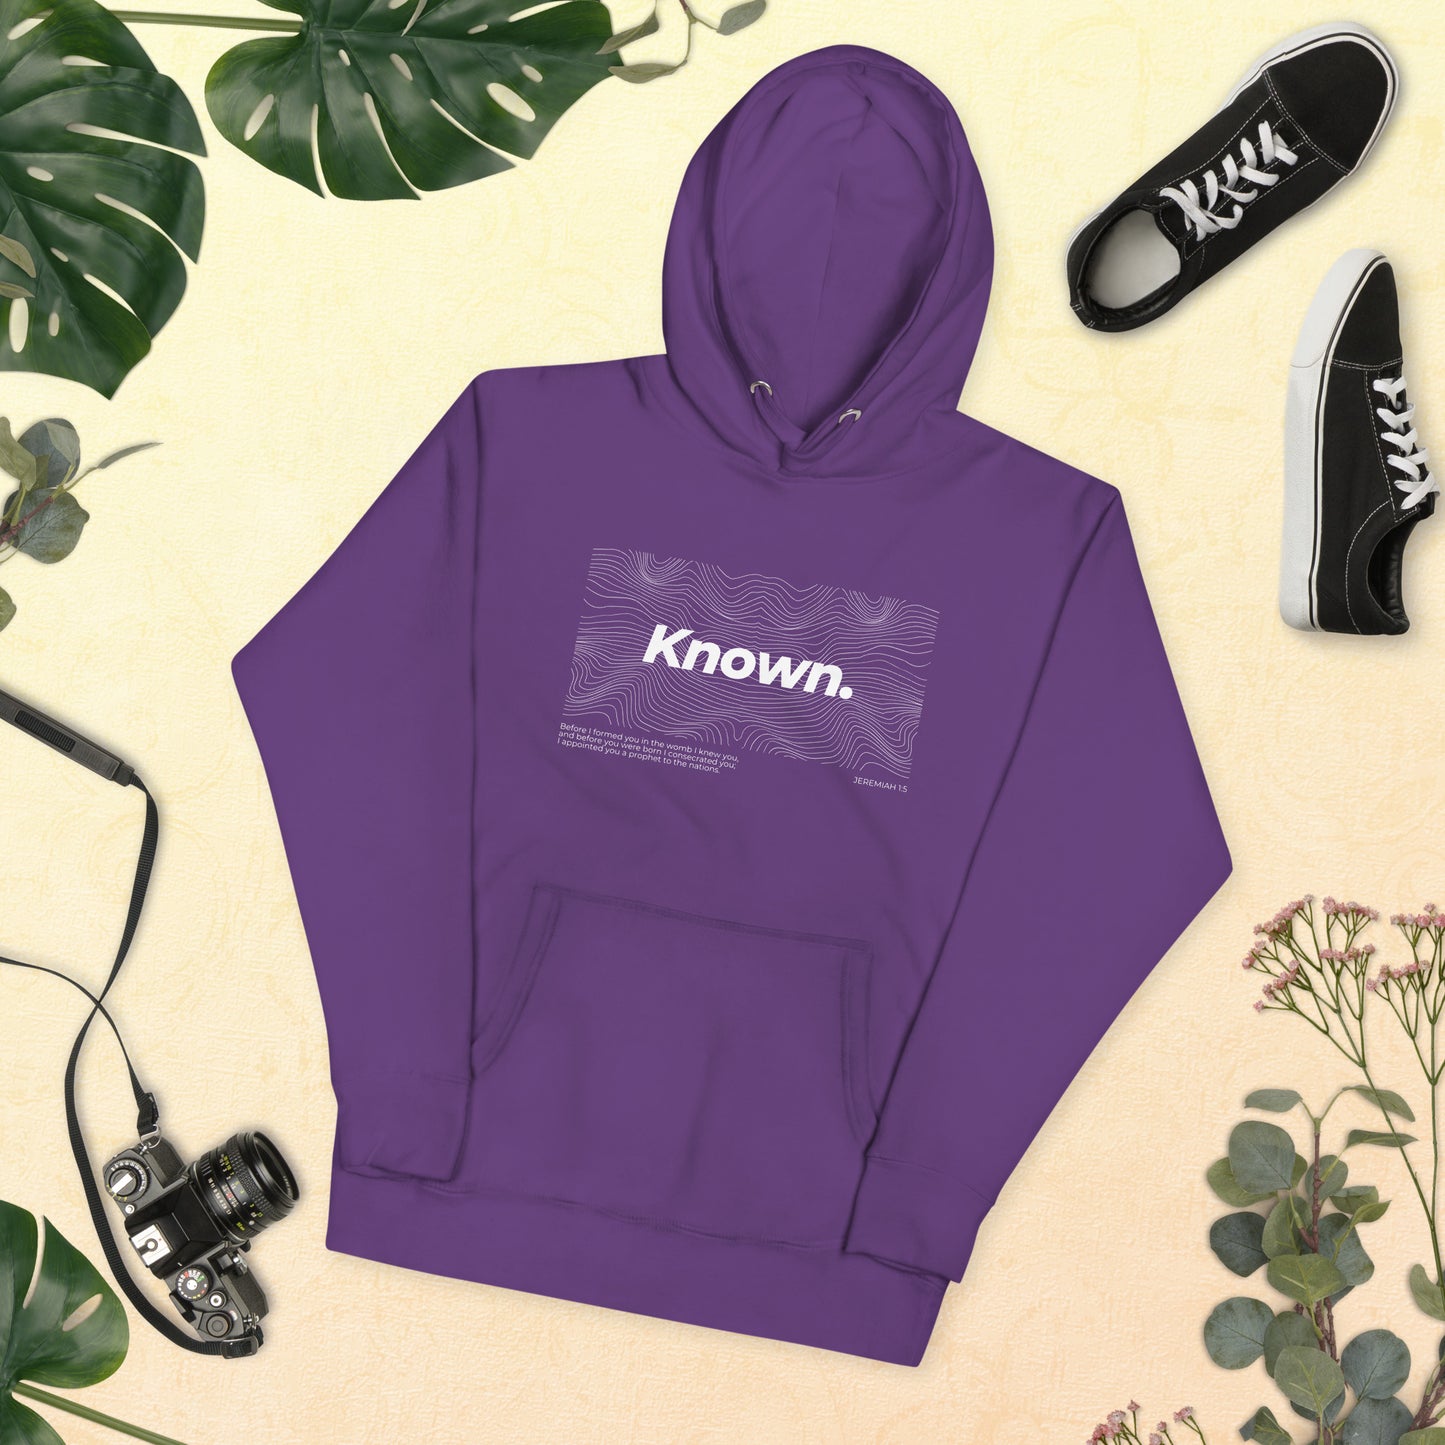 "Known" - Unisex Hoodie